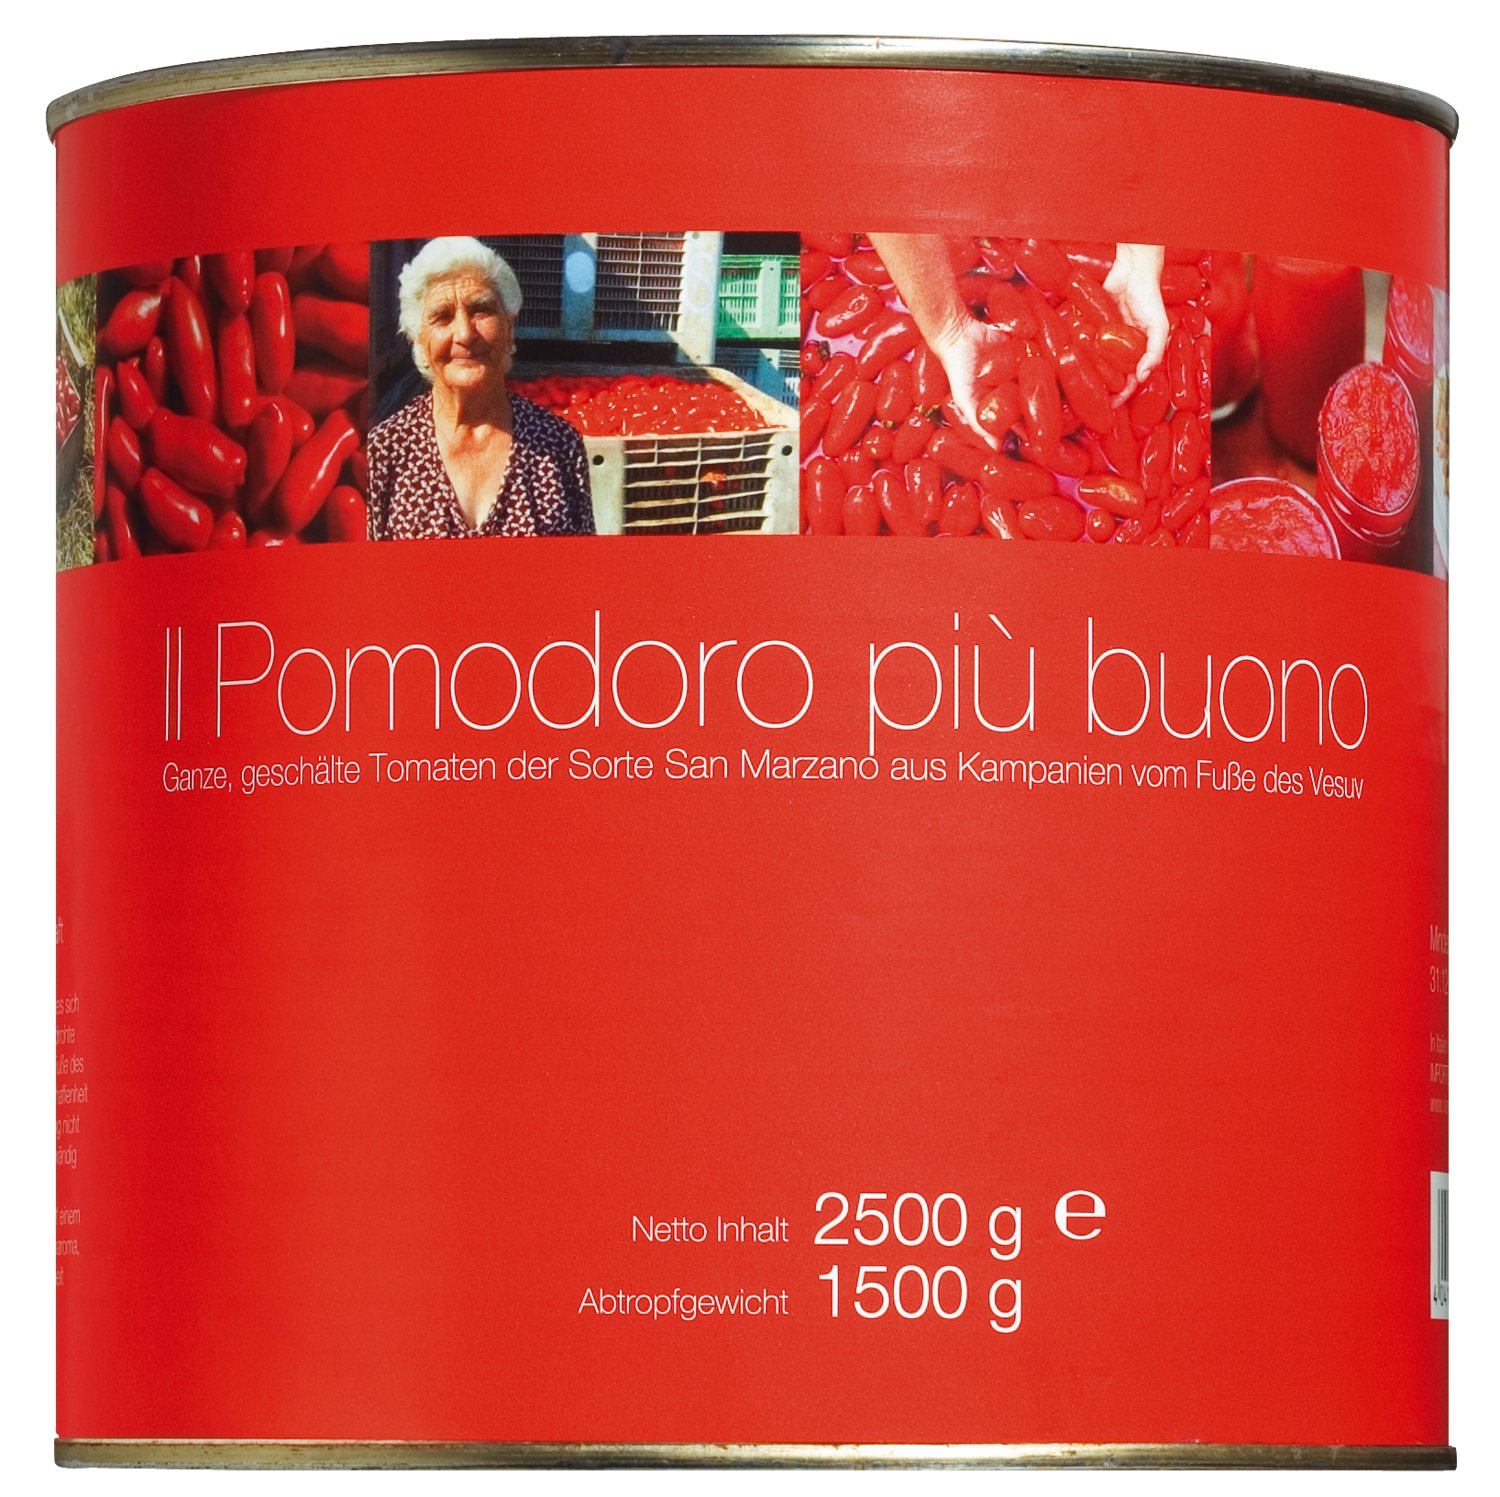 Il pomodoro più buono - Pomodori pelati di San Marzano, 2500 g Dose